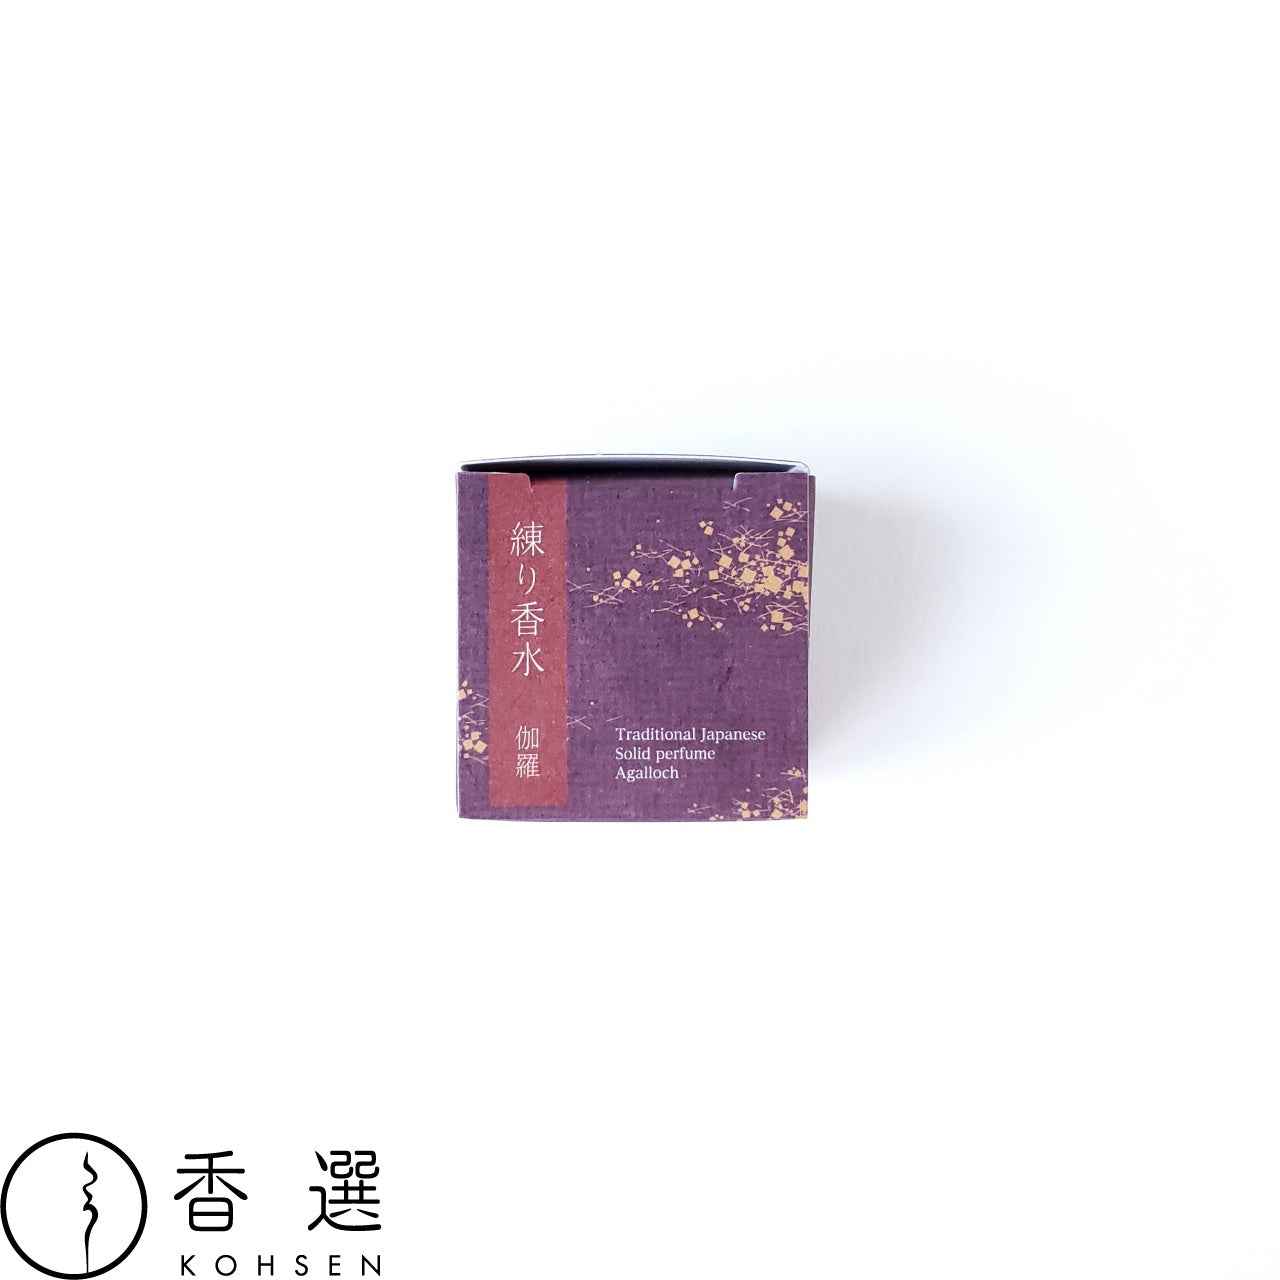 香彩堂 練り香水 伽羅 Japanese Solid Perfume